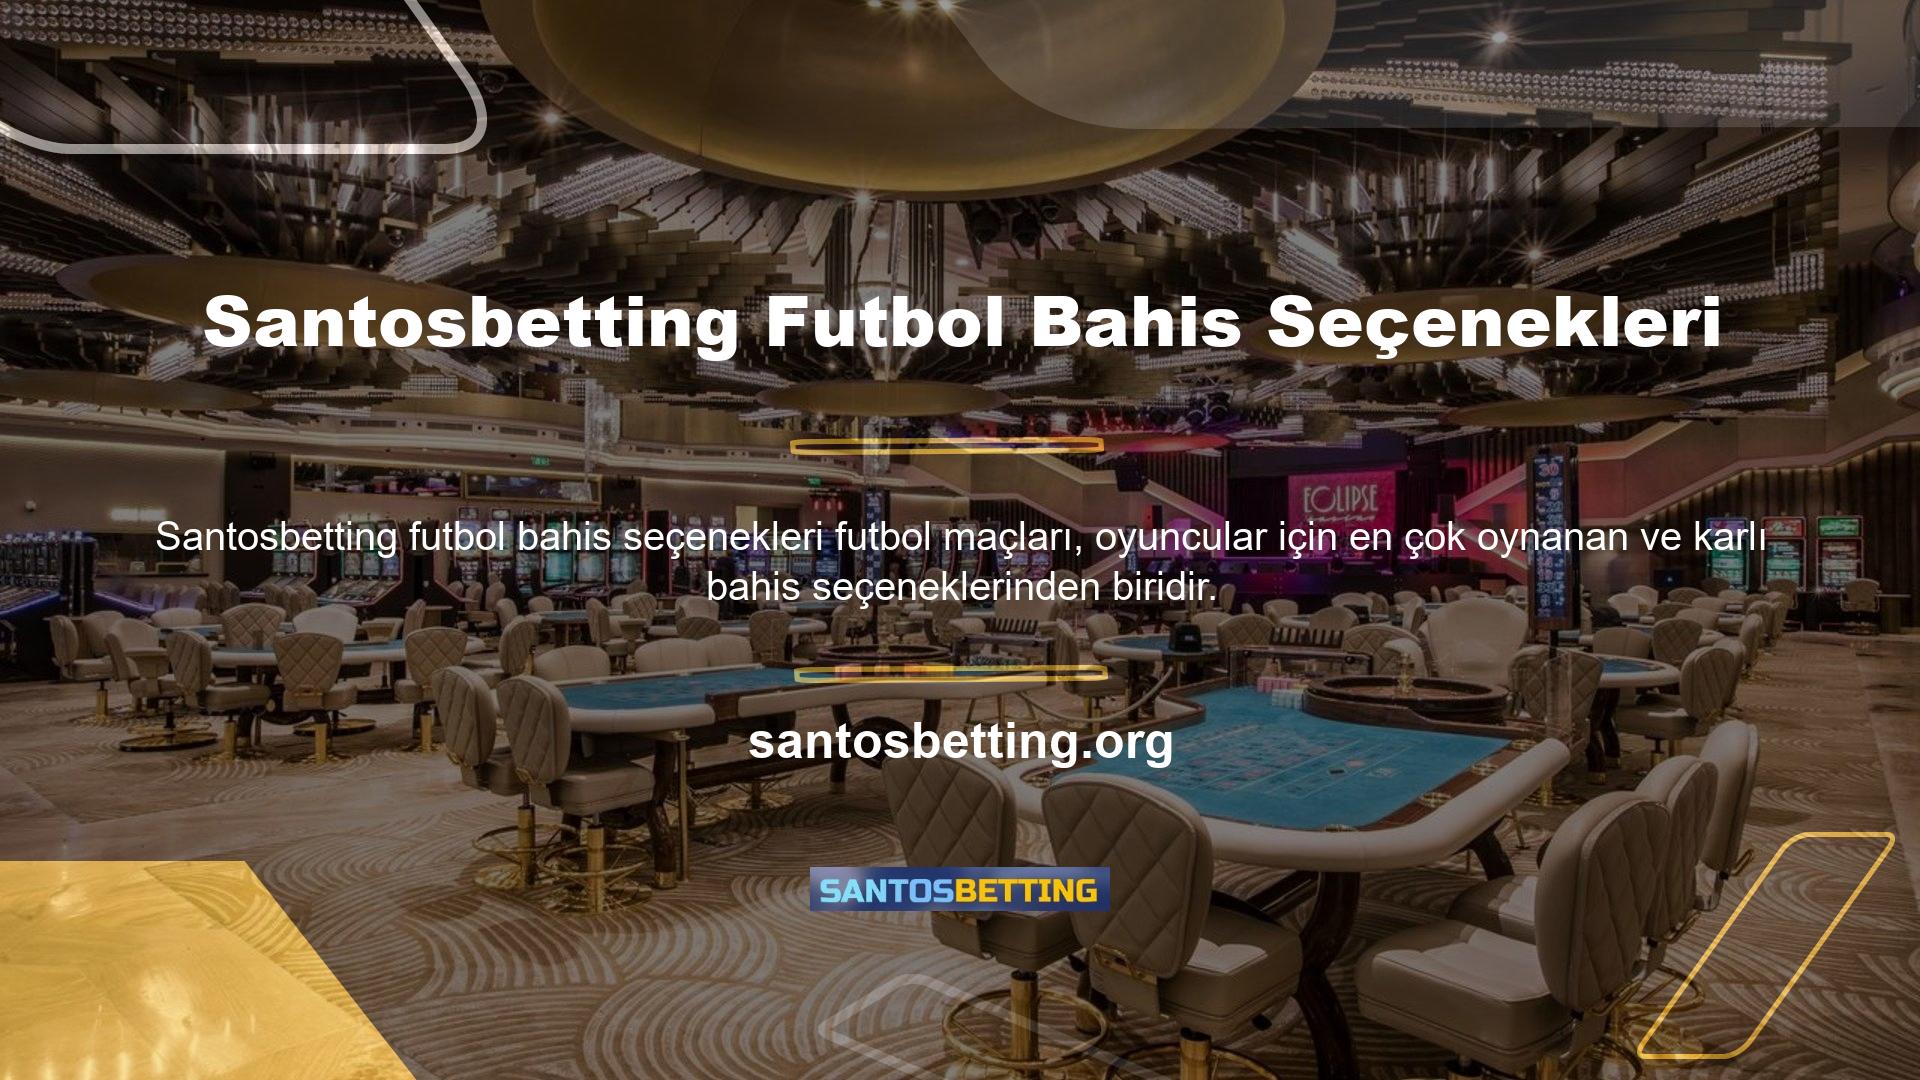 Santosbetting Futbol Bahis Seçenekleri, üyelerin Türkiye ve Avrupa Liglerindeki tüm Santosbetting maçlarına bahis oynayabileceği ve para kazanabileceği en büyük futbol bahis sitesidir